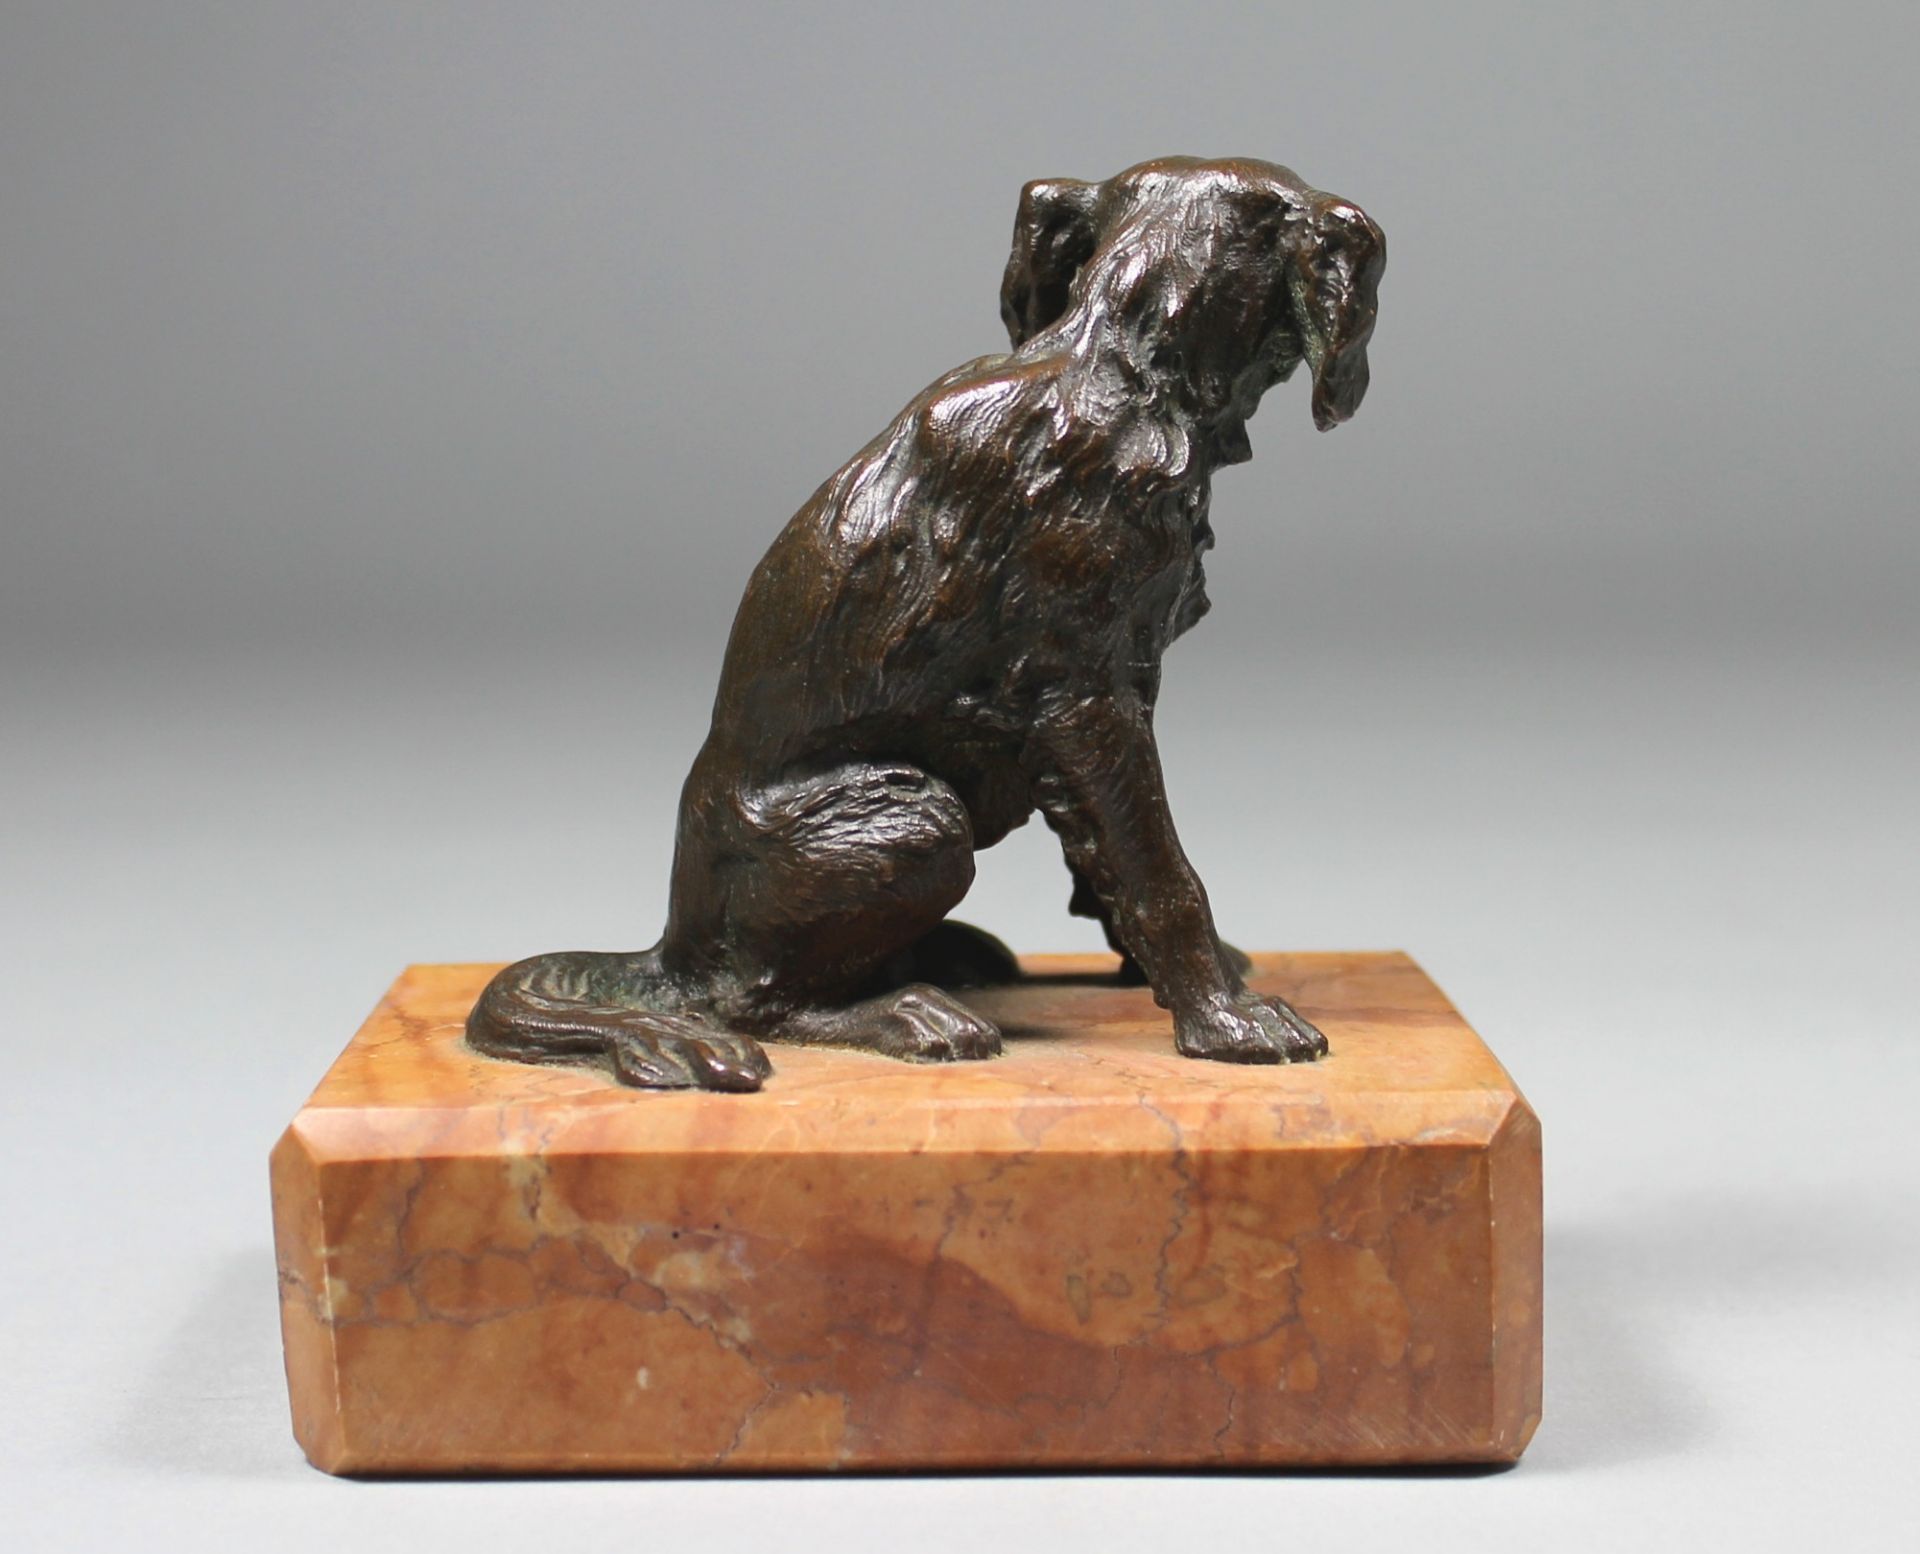 1 kleine Bronzefigur auf Marmorplinthe montiert "sitzender Hund", keine Signatur erkennbar, ca. 12cm - Bild 3 aus 3